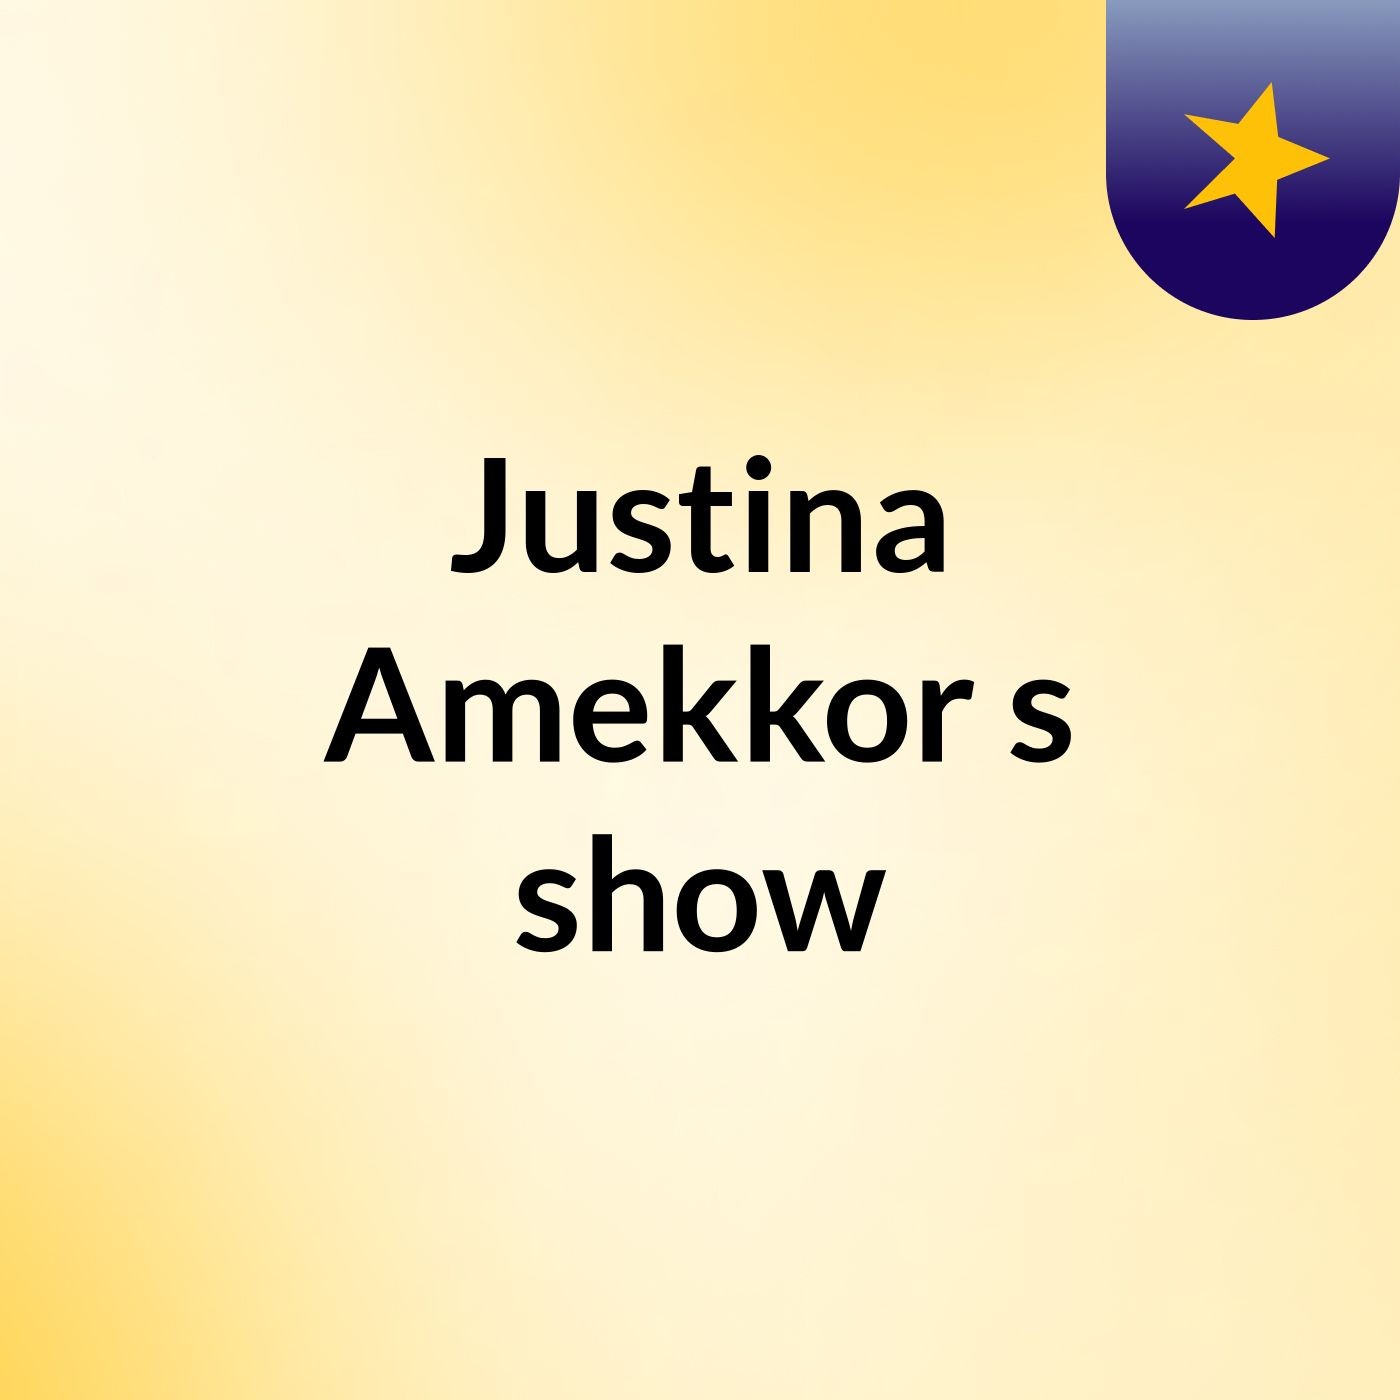 Justina Amekkor's show